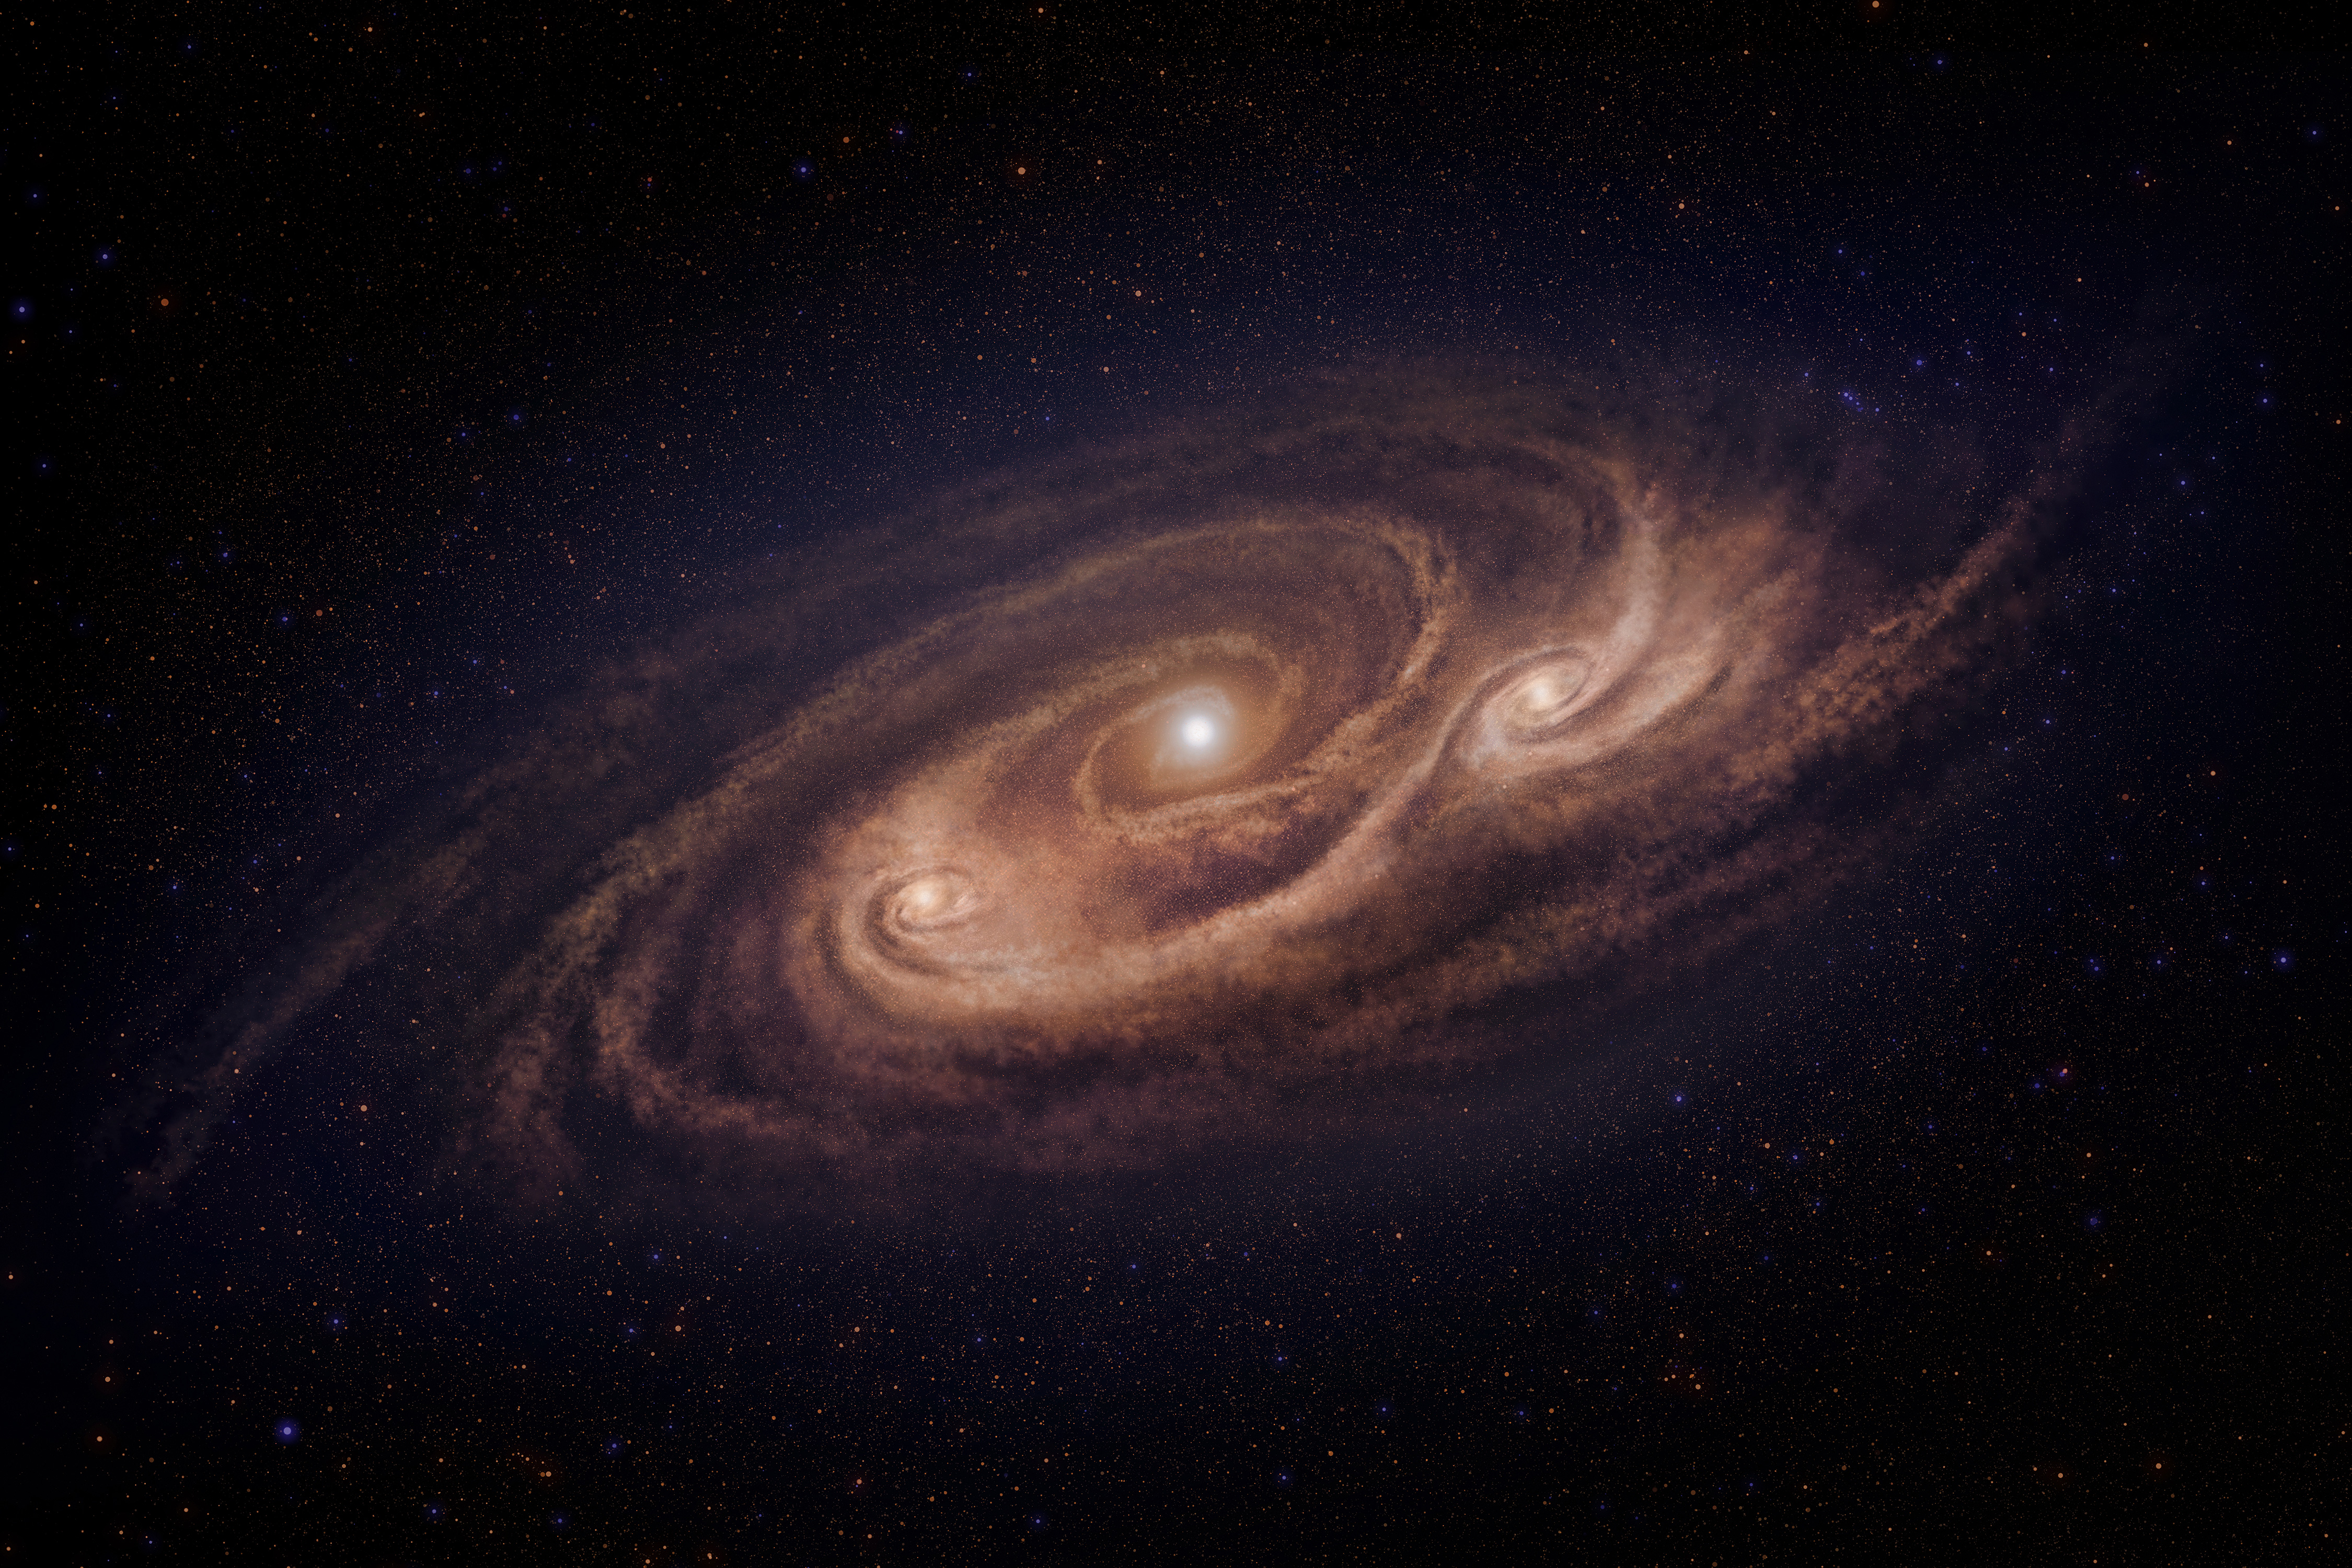 プレスリリース - 124億光年かなたで暴走するモンスター銀河 －遠方 